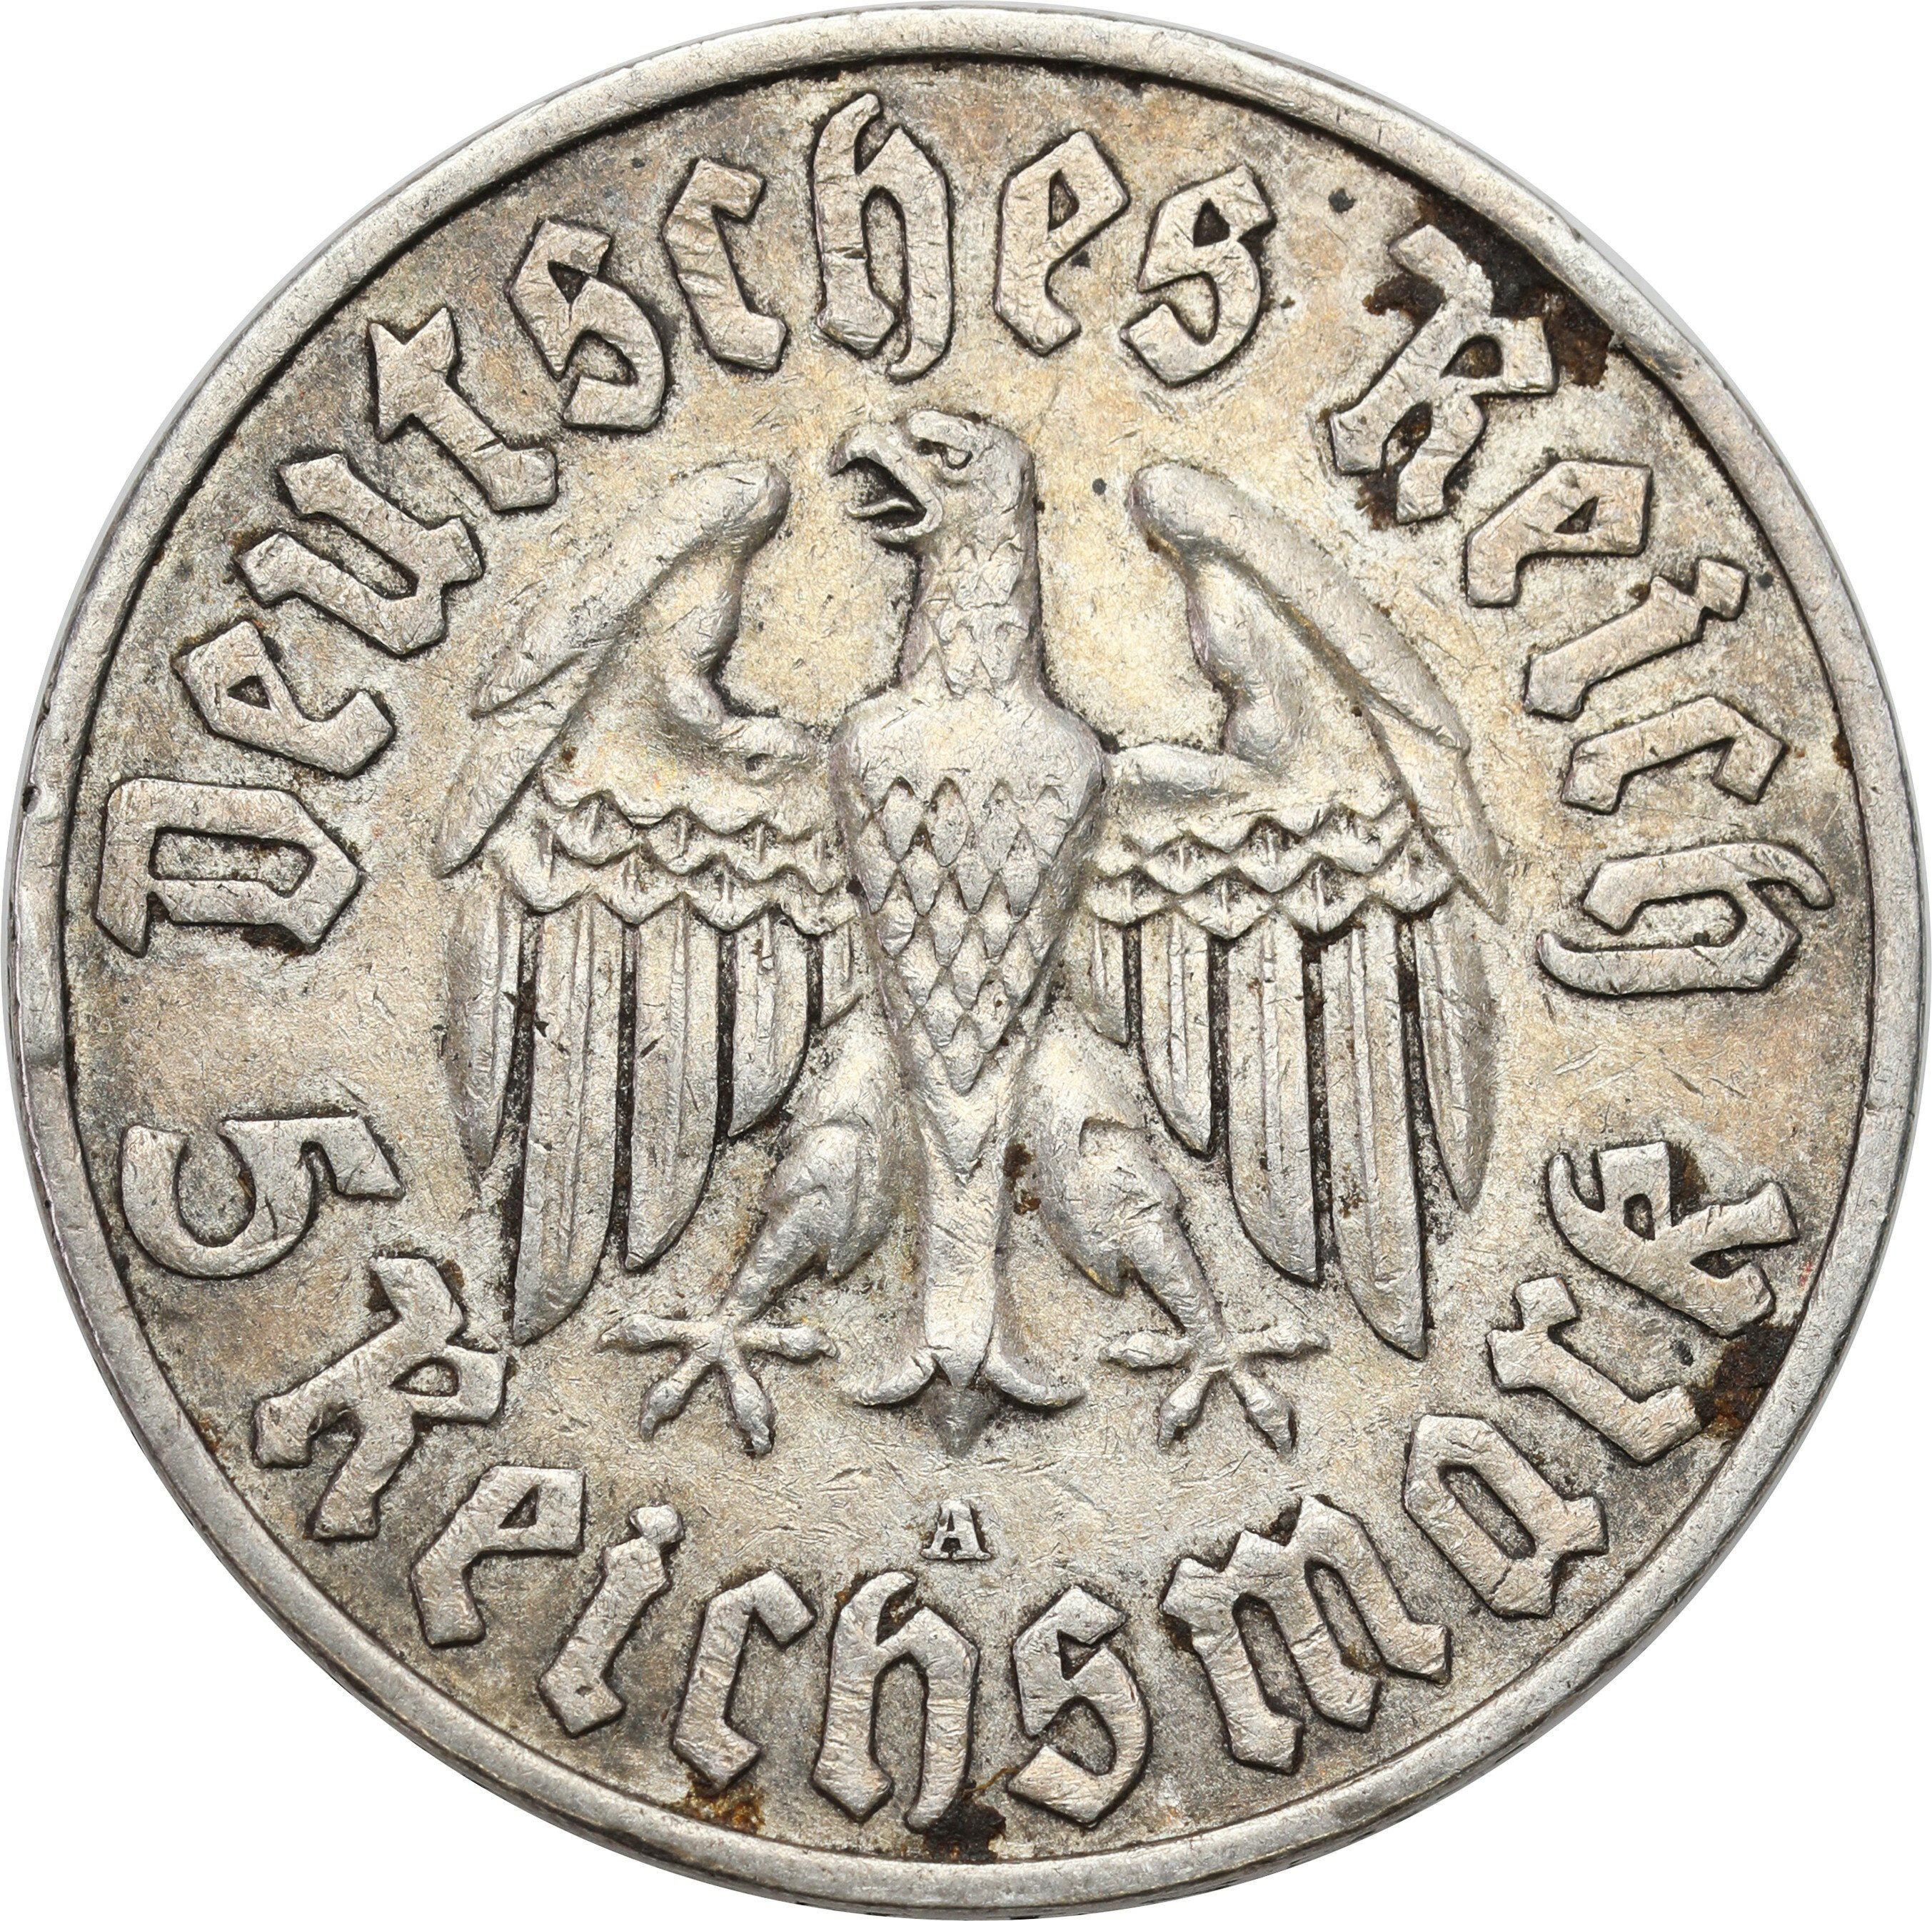 Niemcy, Weimar. 5 marek 1933 A, Berlin